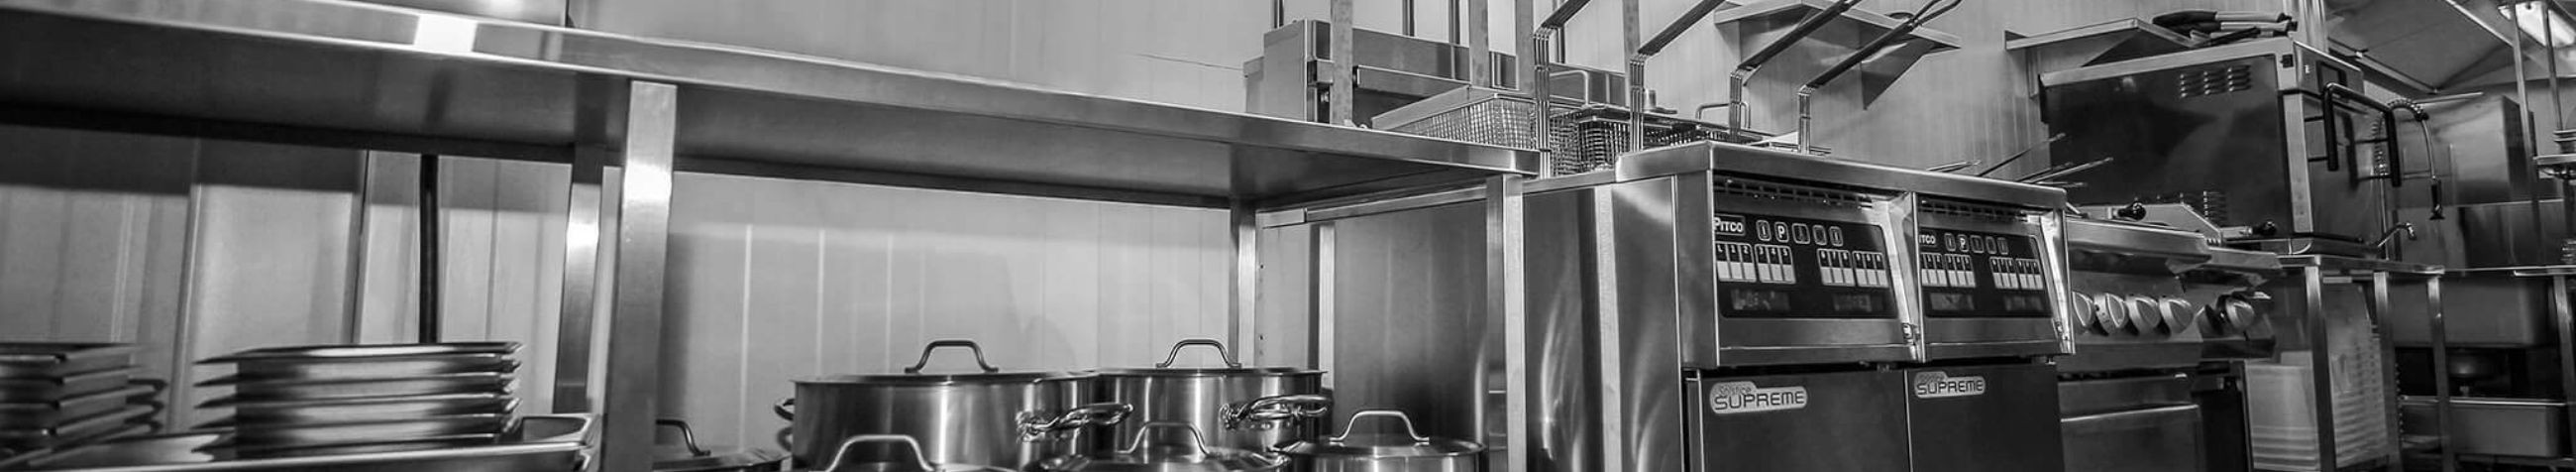 Oleme HORECA sektoris usaldusväärne partner, kes tarnib uuenduslikke köögi- ja baariseadmeid, tagab professionaalse paigalduse ning pakub tipptasemel hooldus- ja remonditeenuseid.